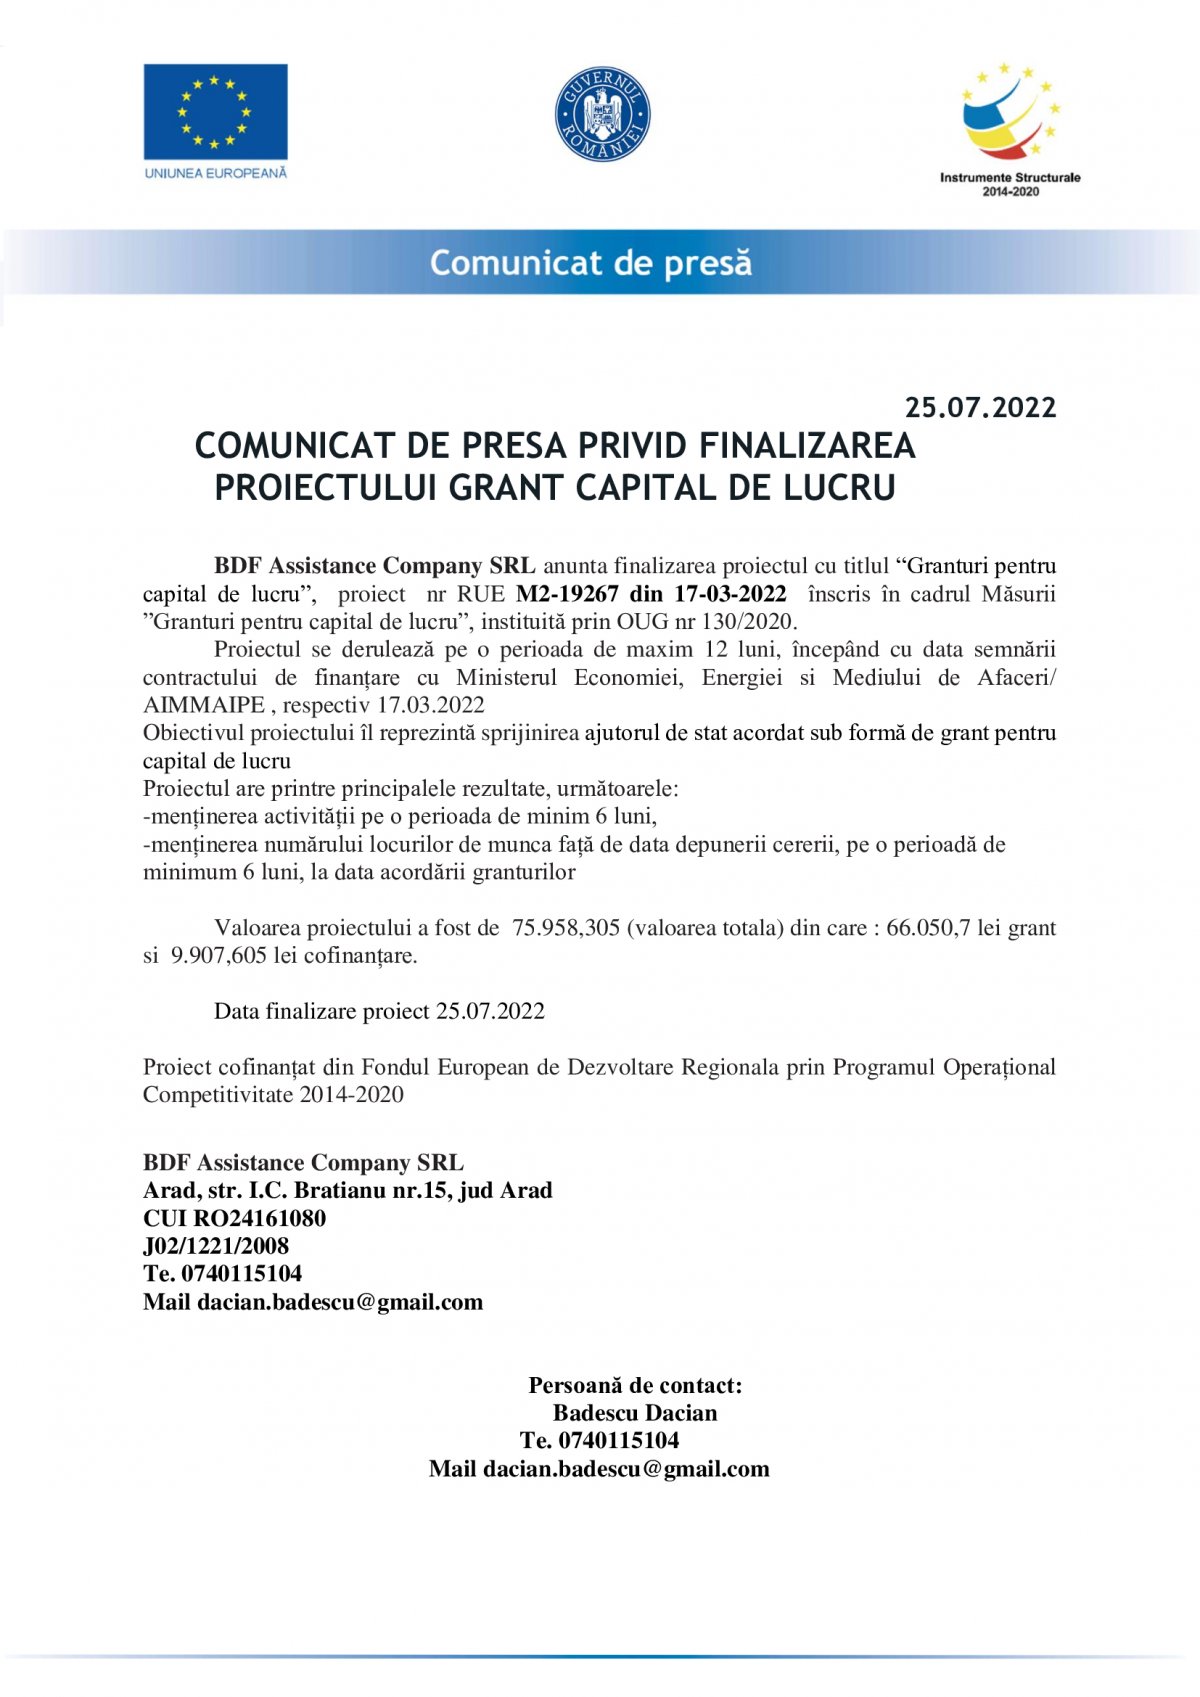 COMUNICAT DE PRESA PRIVID FINALIZAREA PROIECTULUI GRANT CAPITAL DE LUCRU